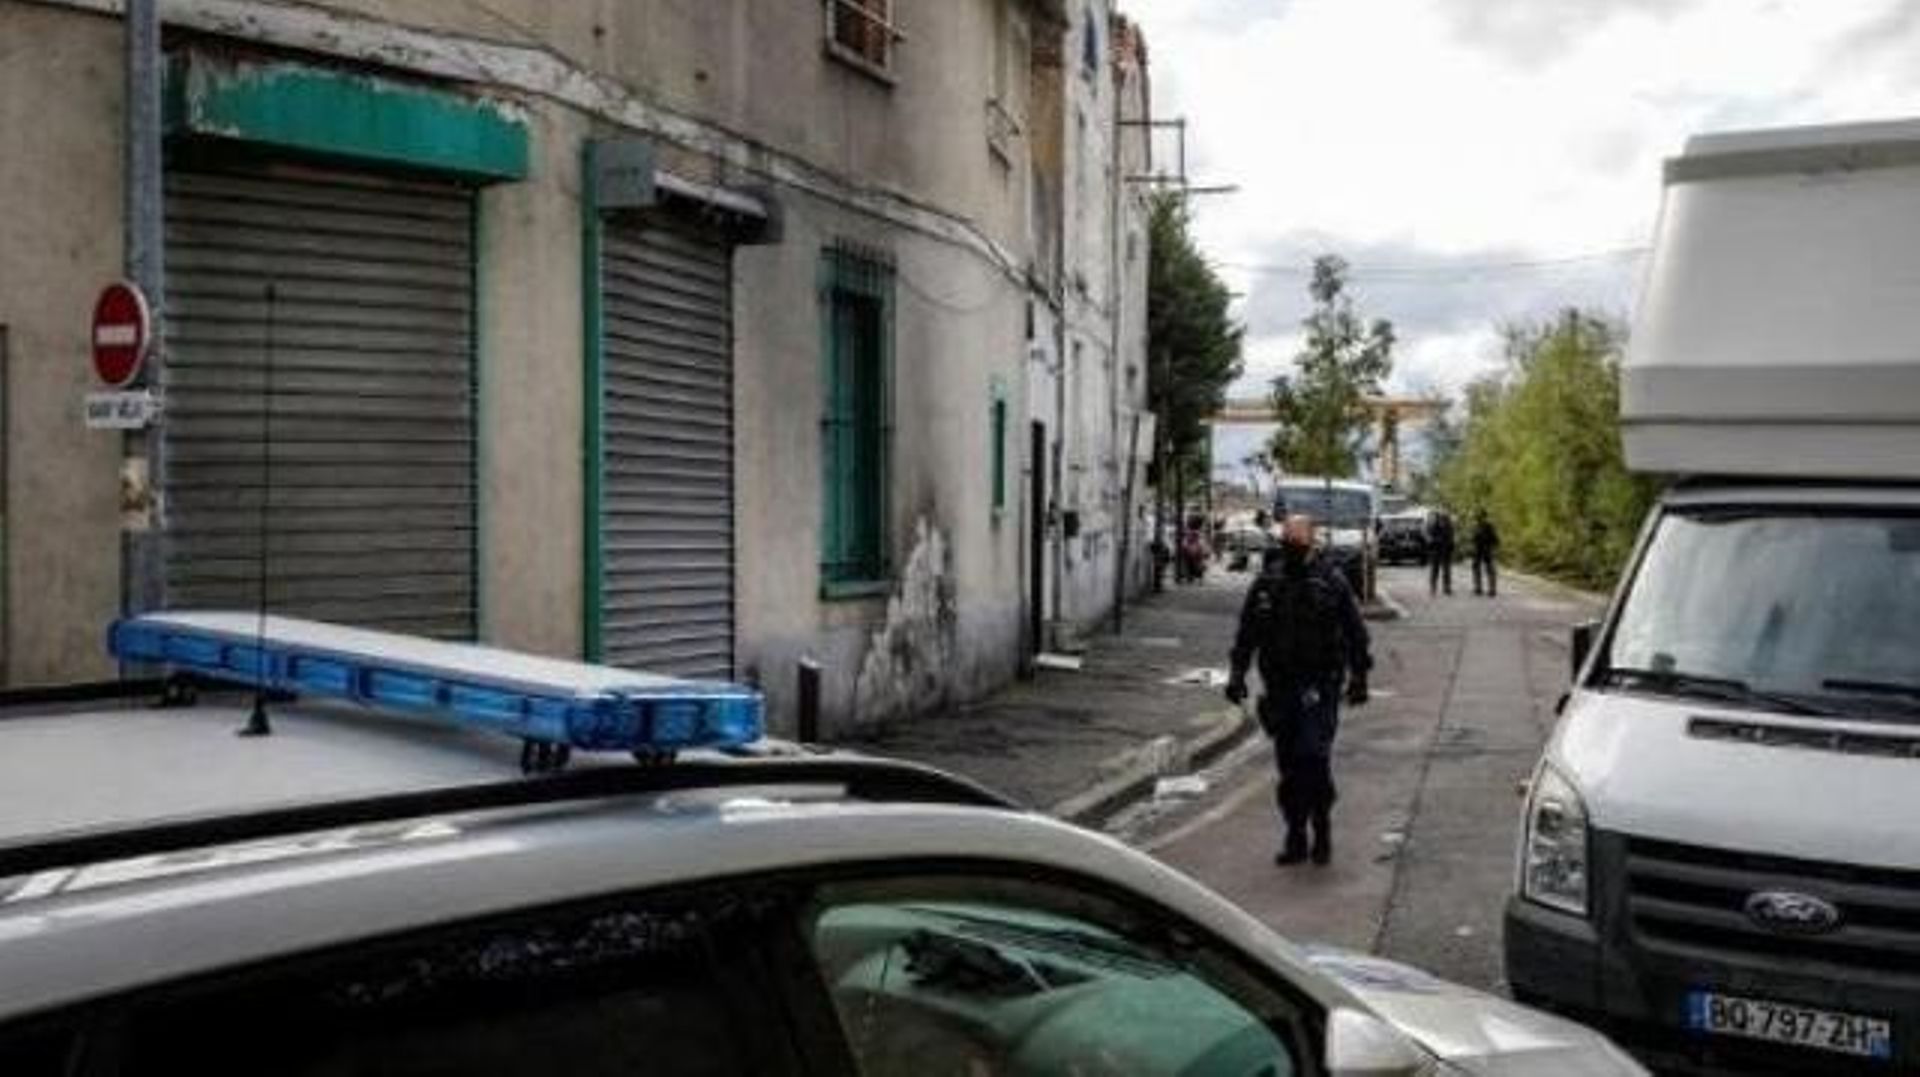 Quatre enfants et une femme tués dans un crime "intrafamilial" près de Paris